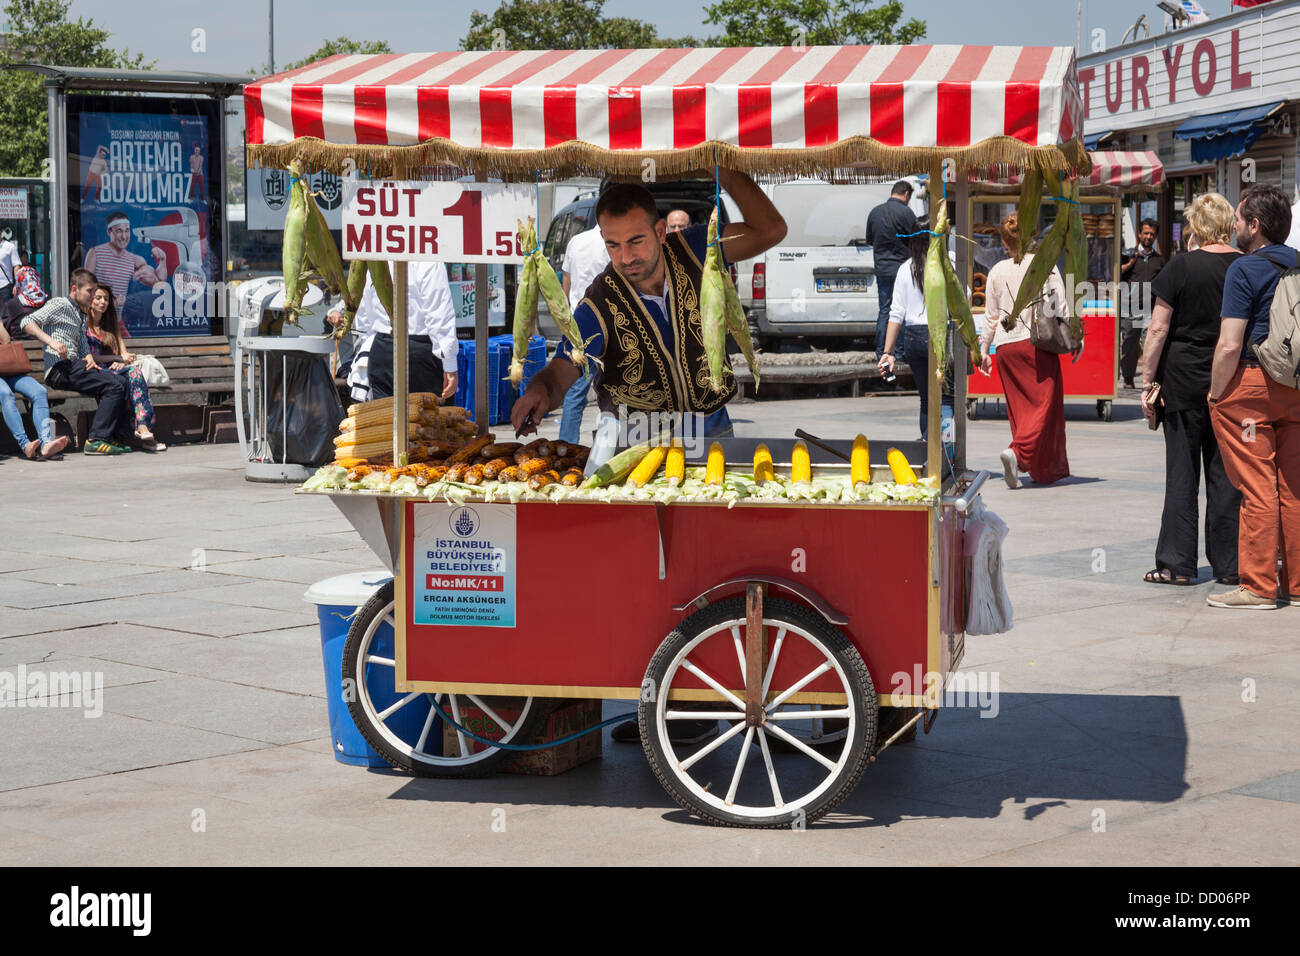 L'uomo vendere sulla pannocchia di mais da un mobile di stallo alimentare, Eminonu, Golden Horn, Istanbul, Turchia Foto Stock